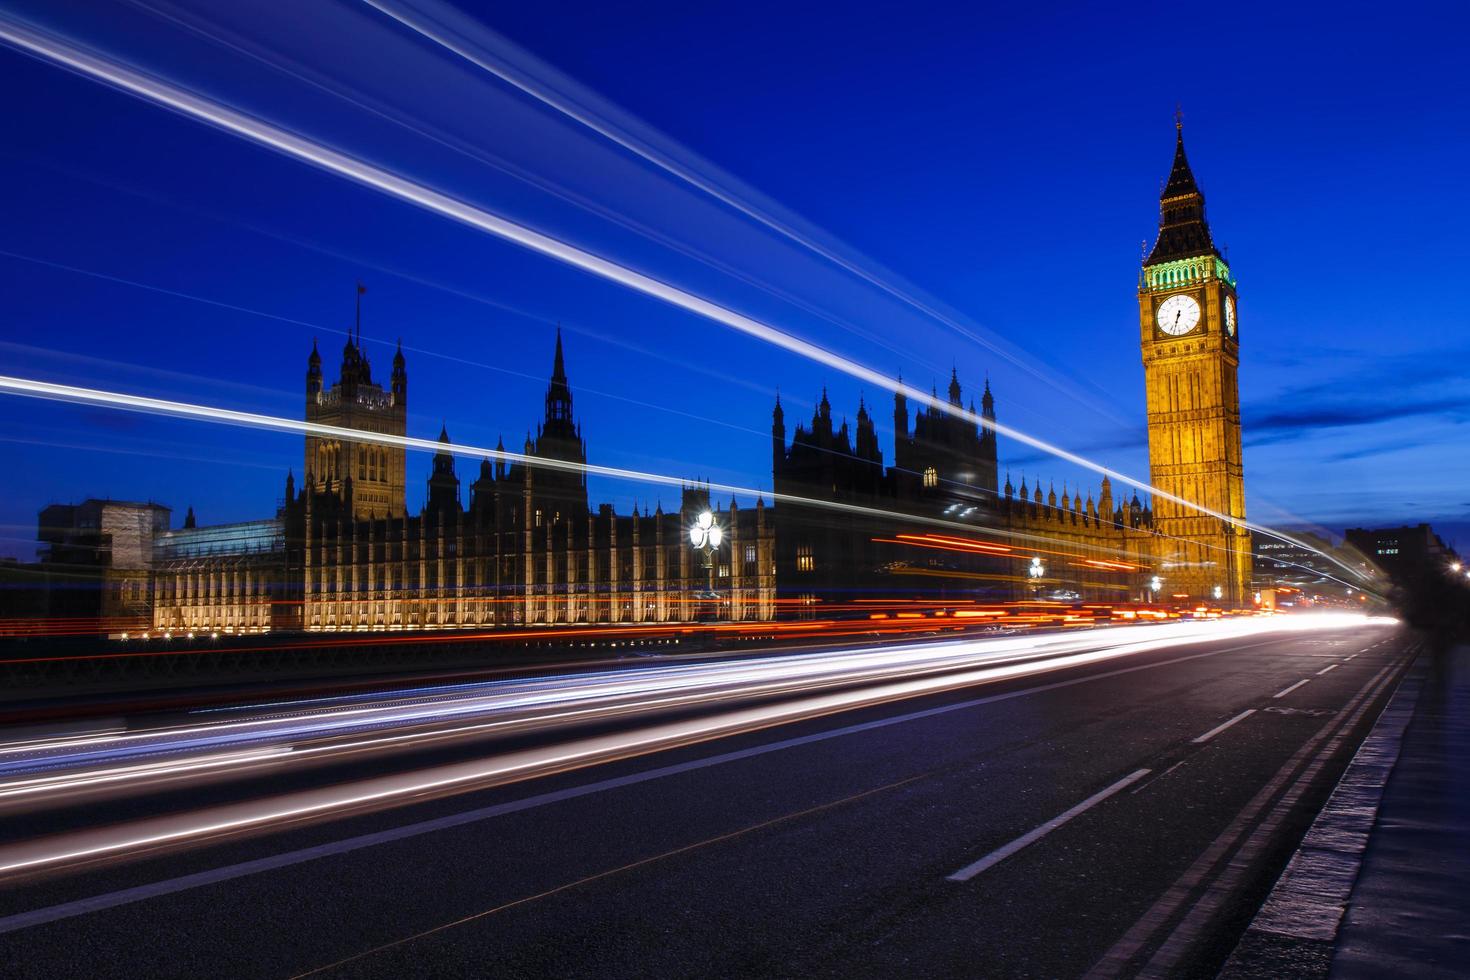 El palacio de Westminster con la torre Elizabeth en la noche, el Big Ben, Reino Unido foto